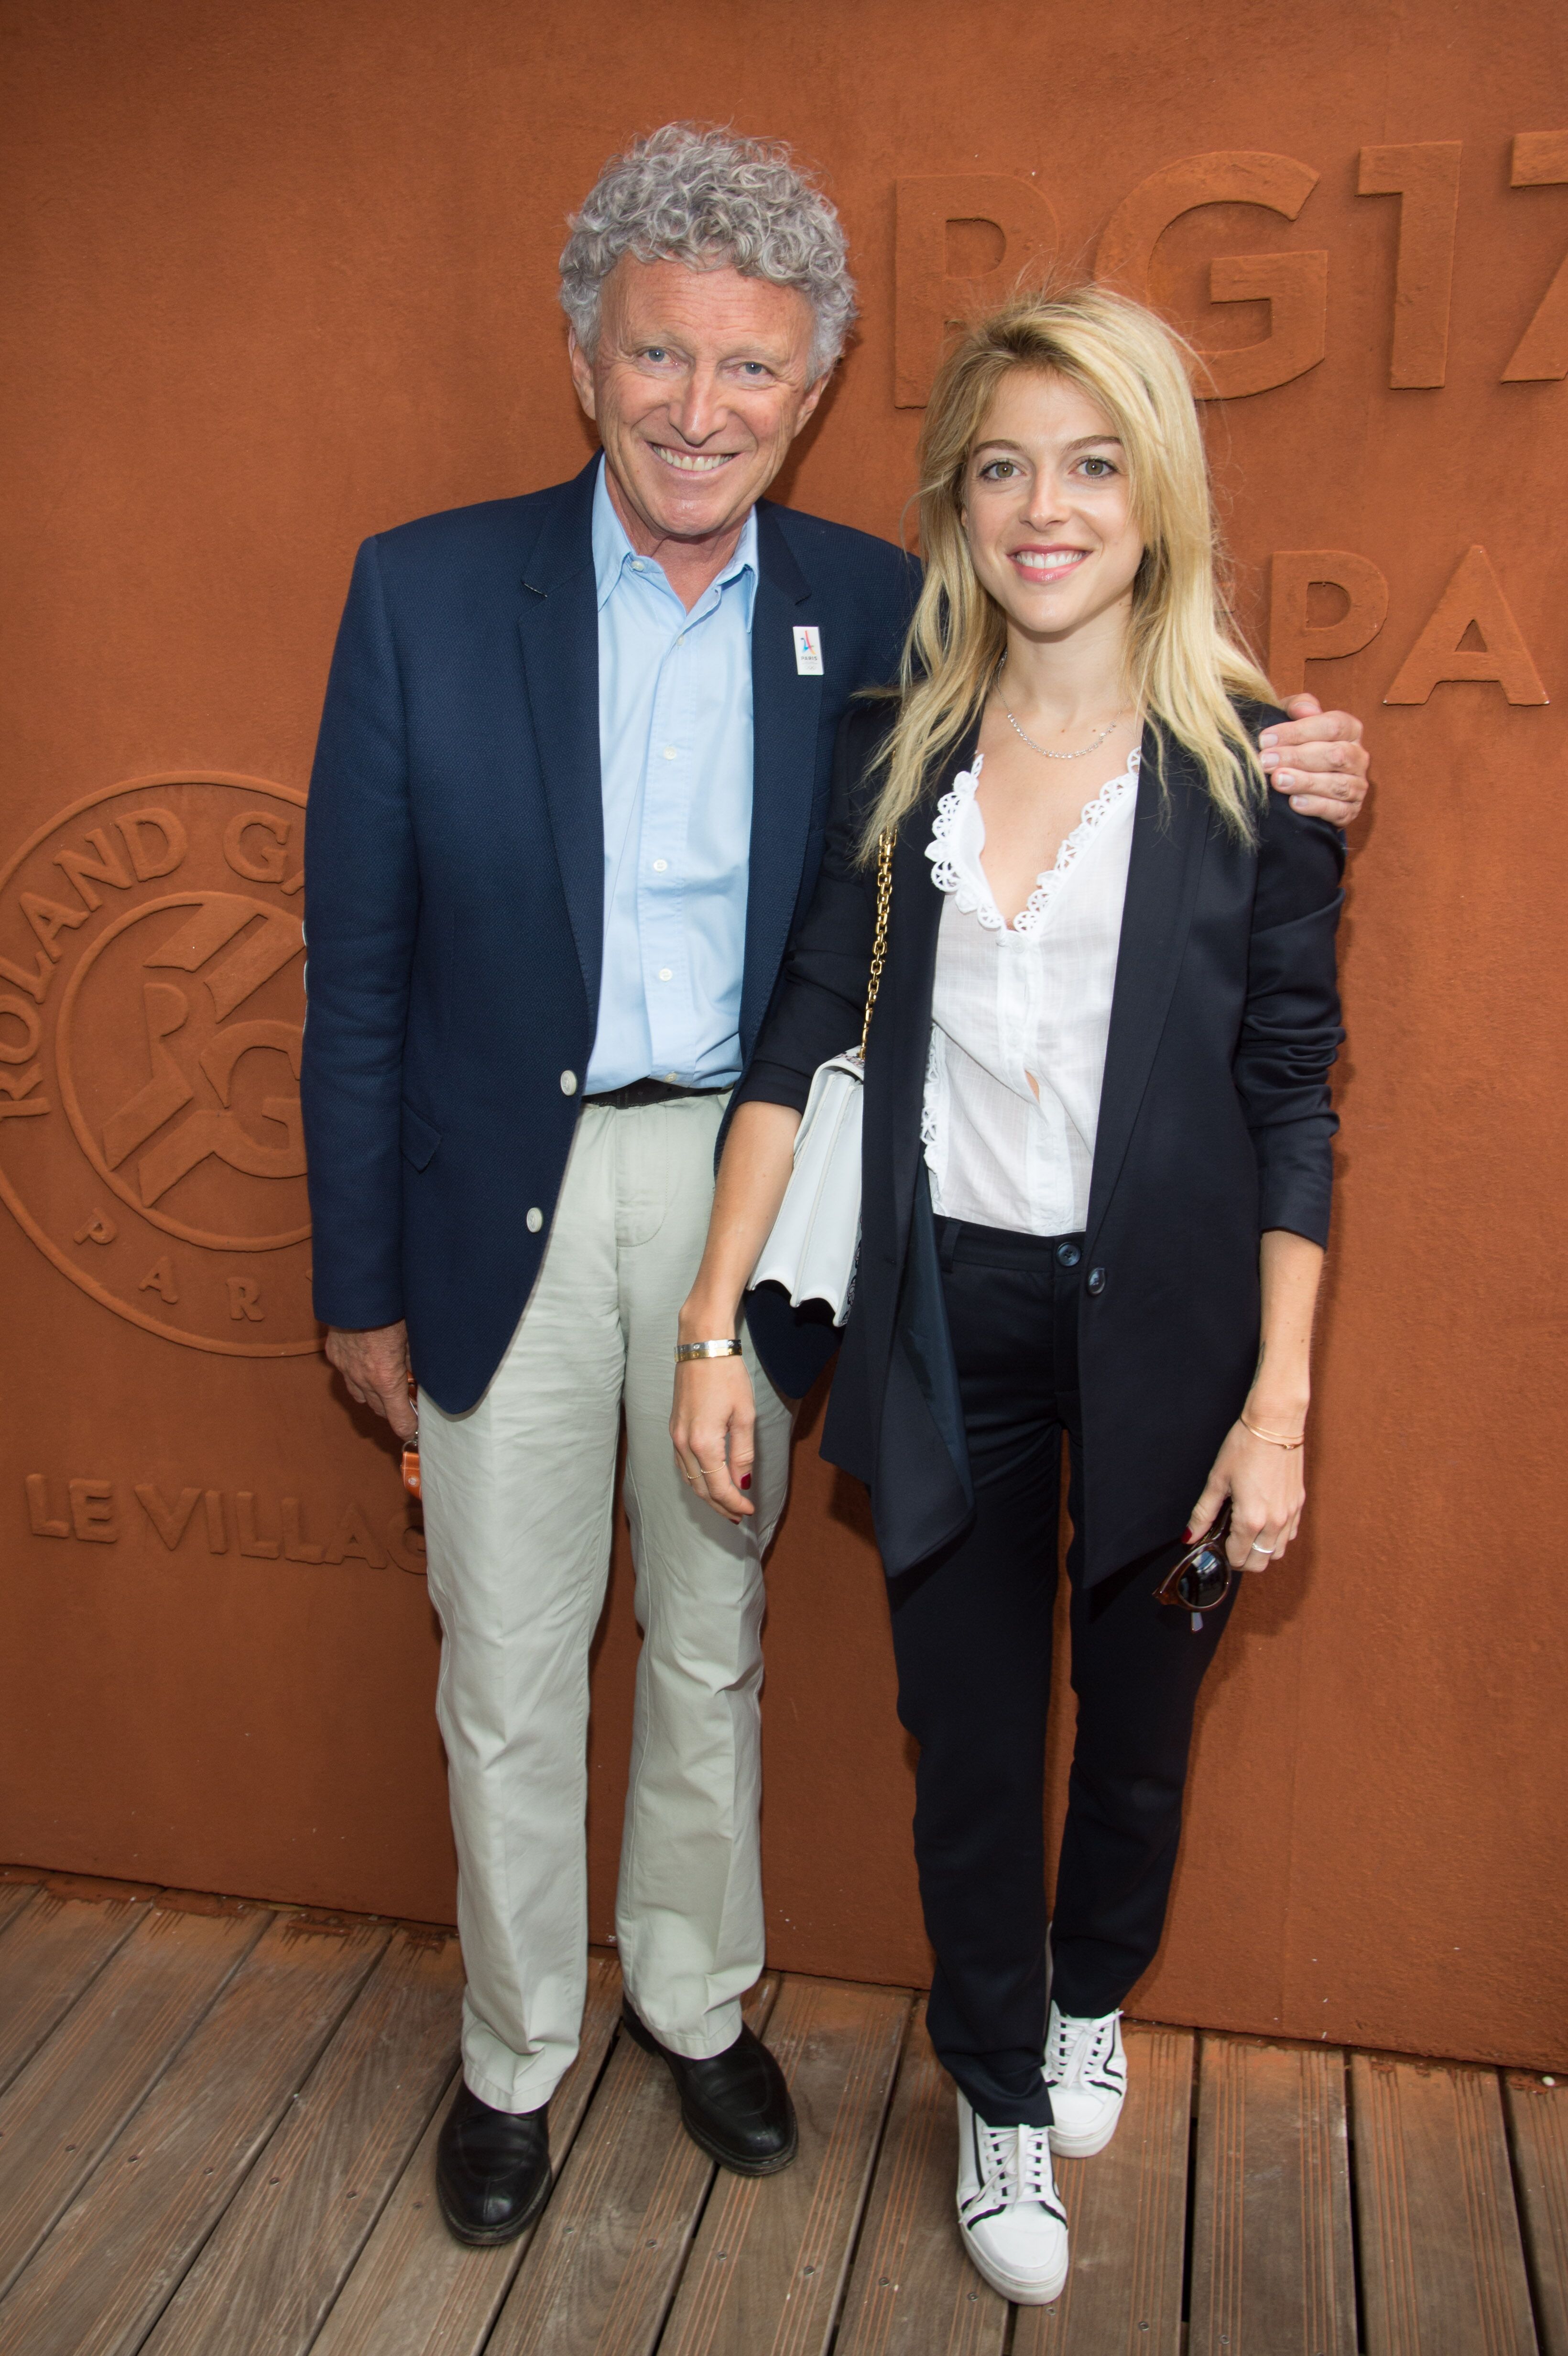 Nelson Monfort et sa fille Victoria Monfort à Roland Garros le 9 juin 2017 à Paris, France. | Photo : Getty Images